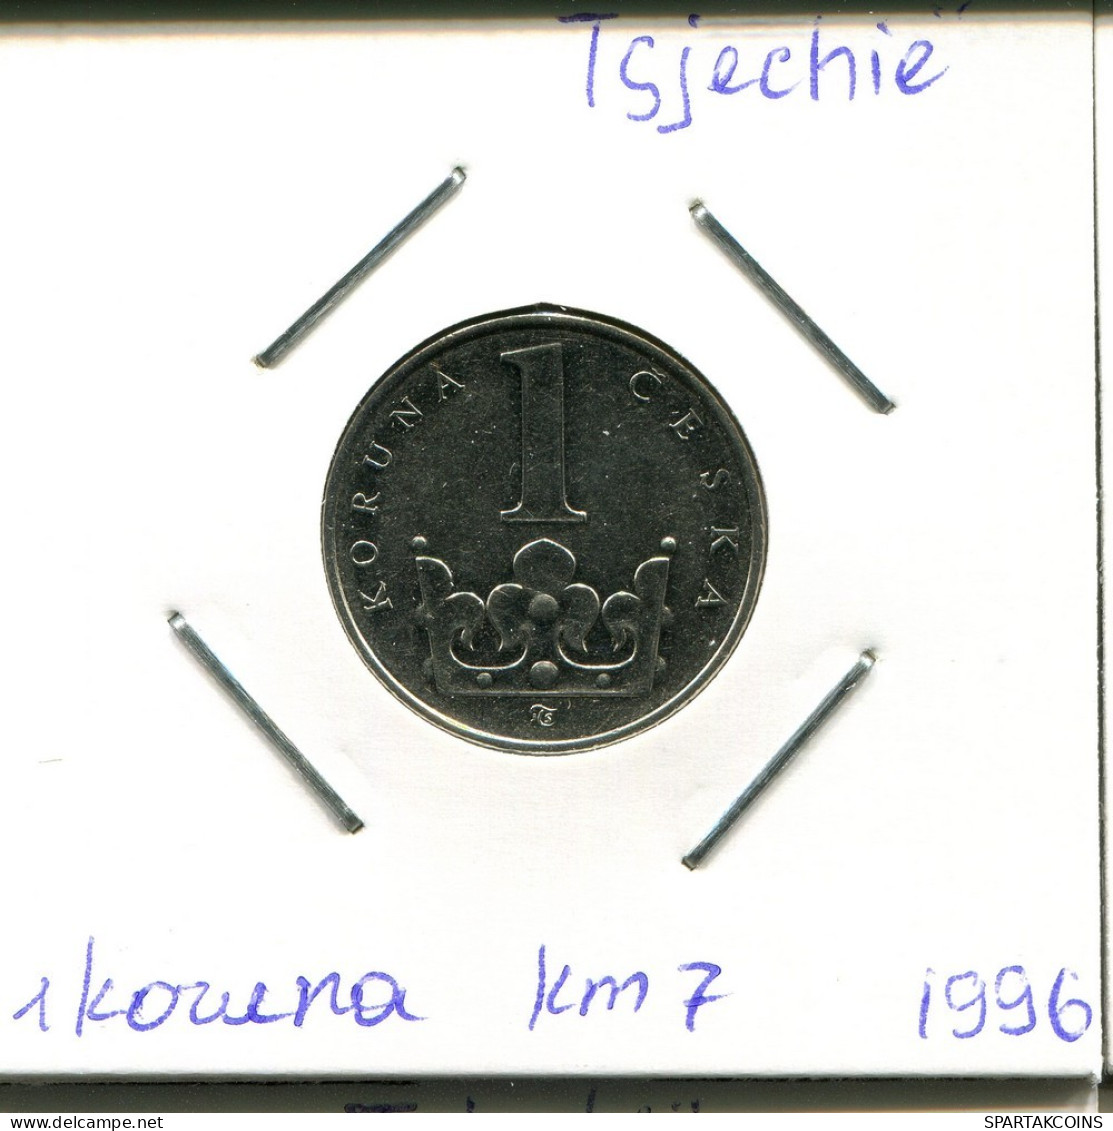 1 KORUNA 1996 CZECH REPUBLIC Coin #AP740.2.U.A - República Checa